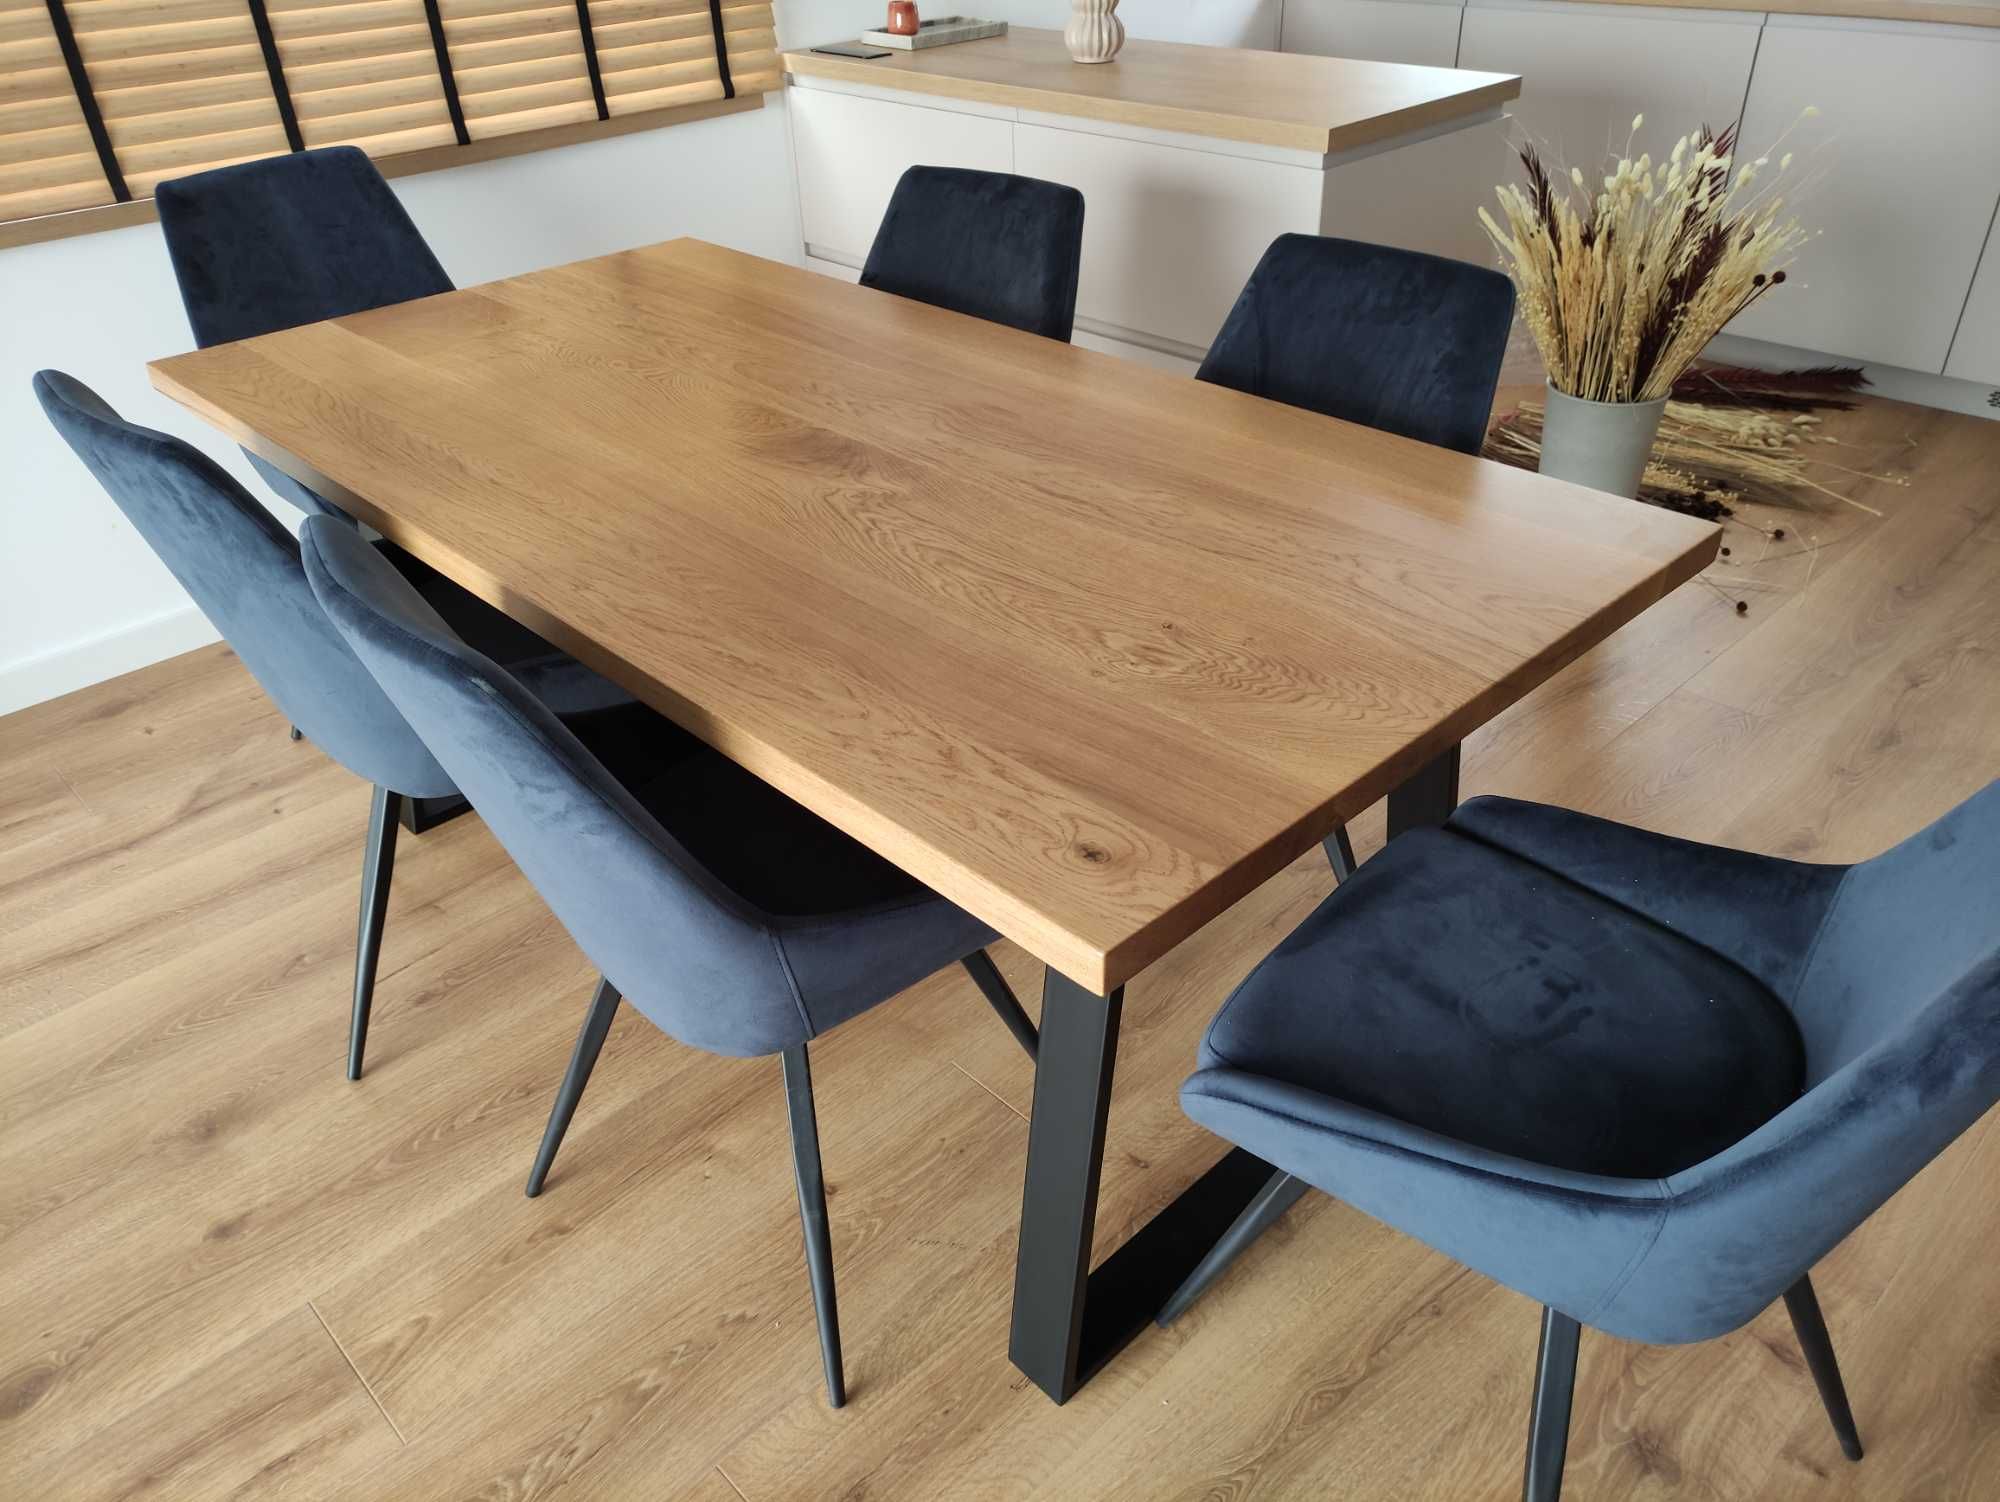 Stół dębowy 180x80 nogi metalowe biuro, ława stolik kawowy